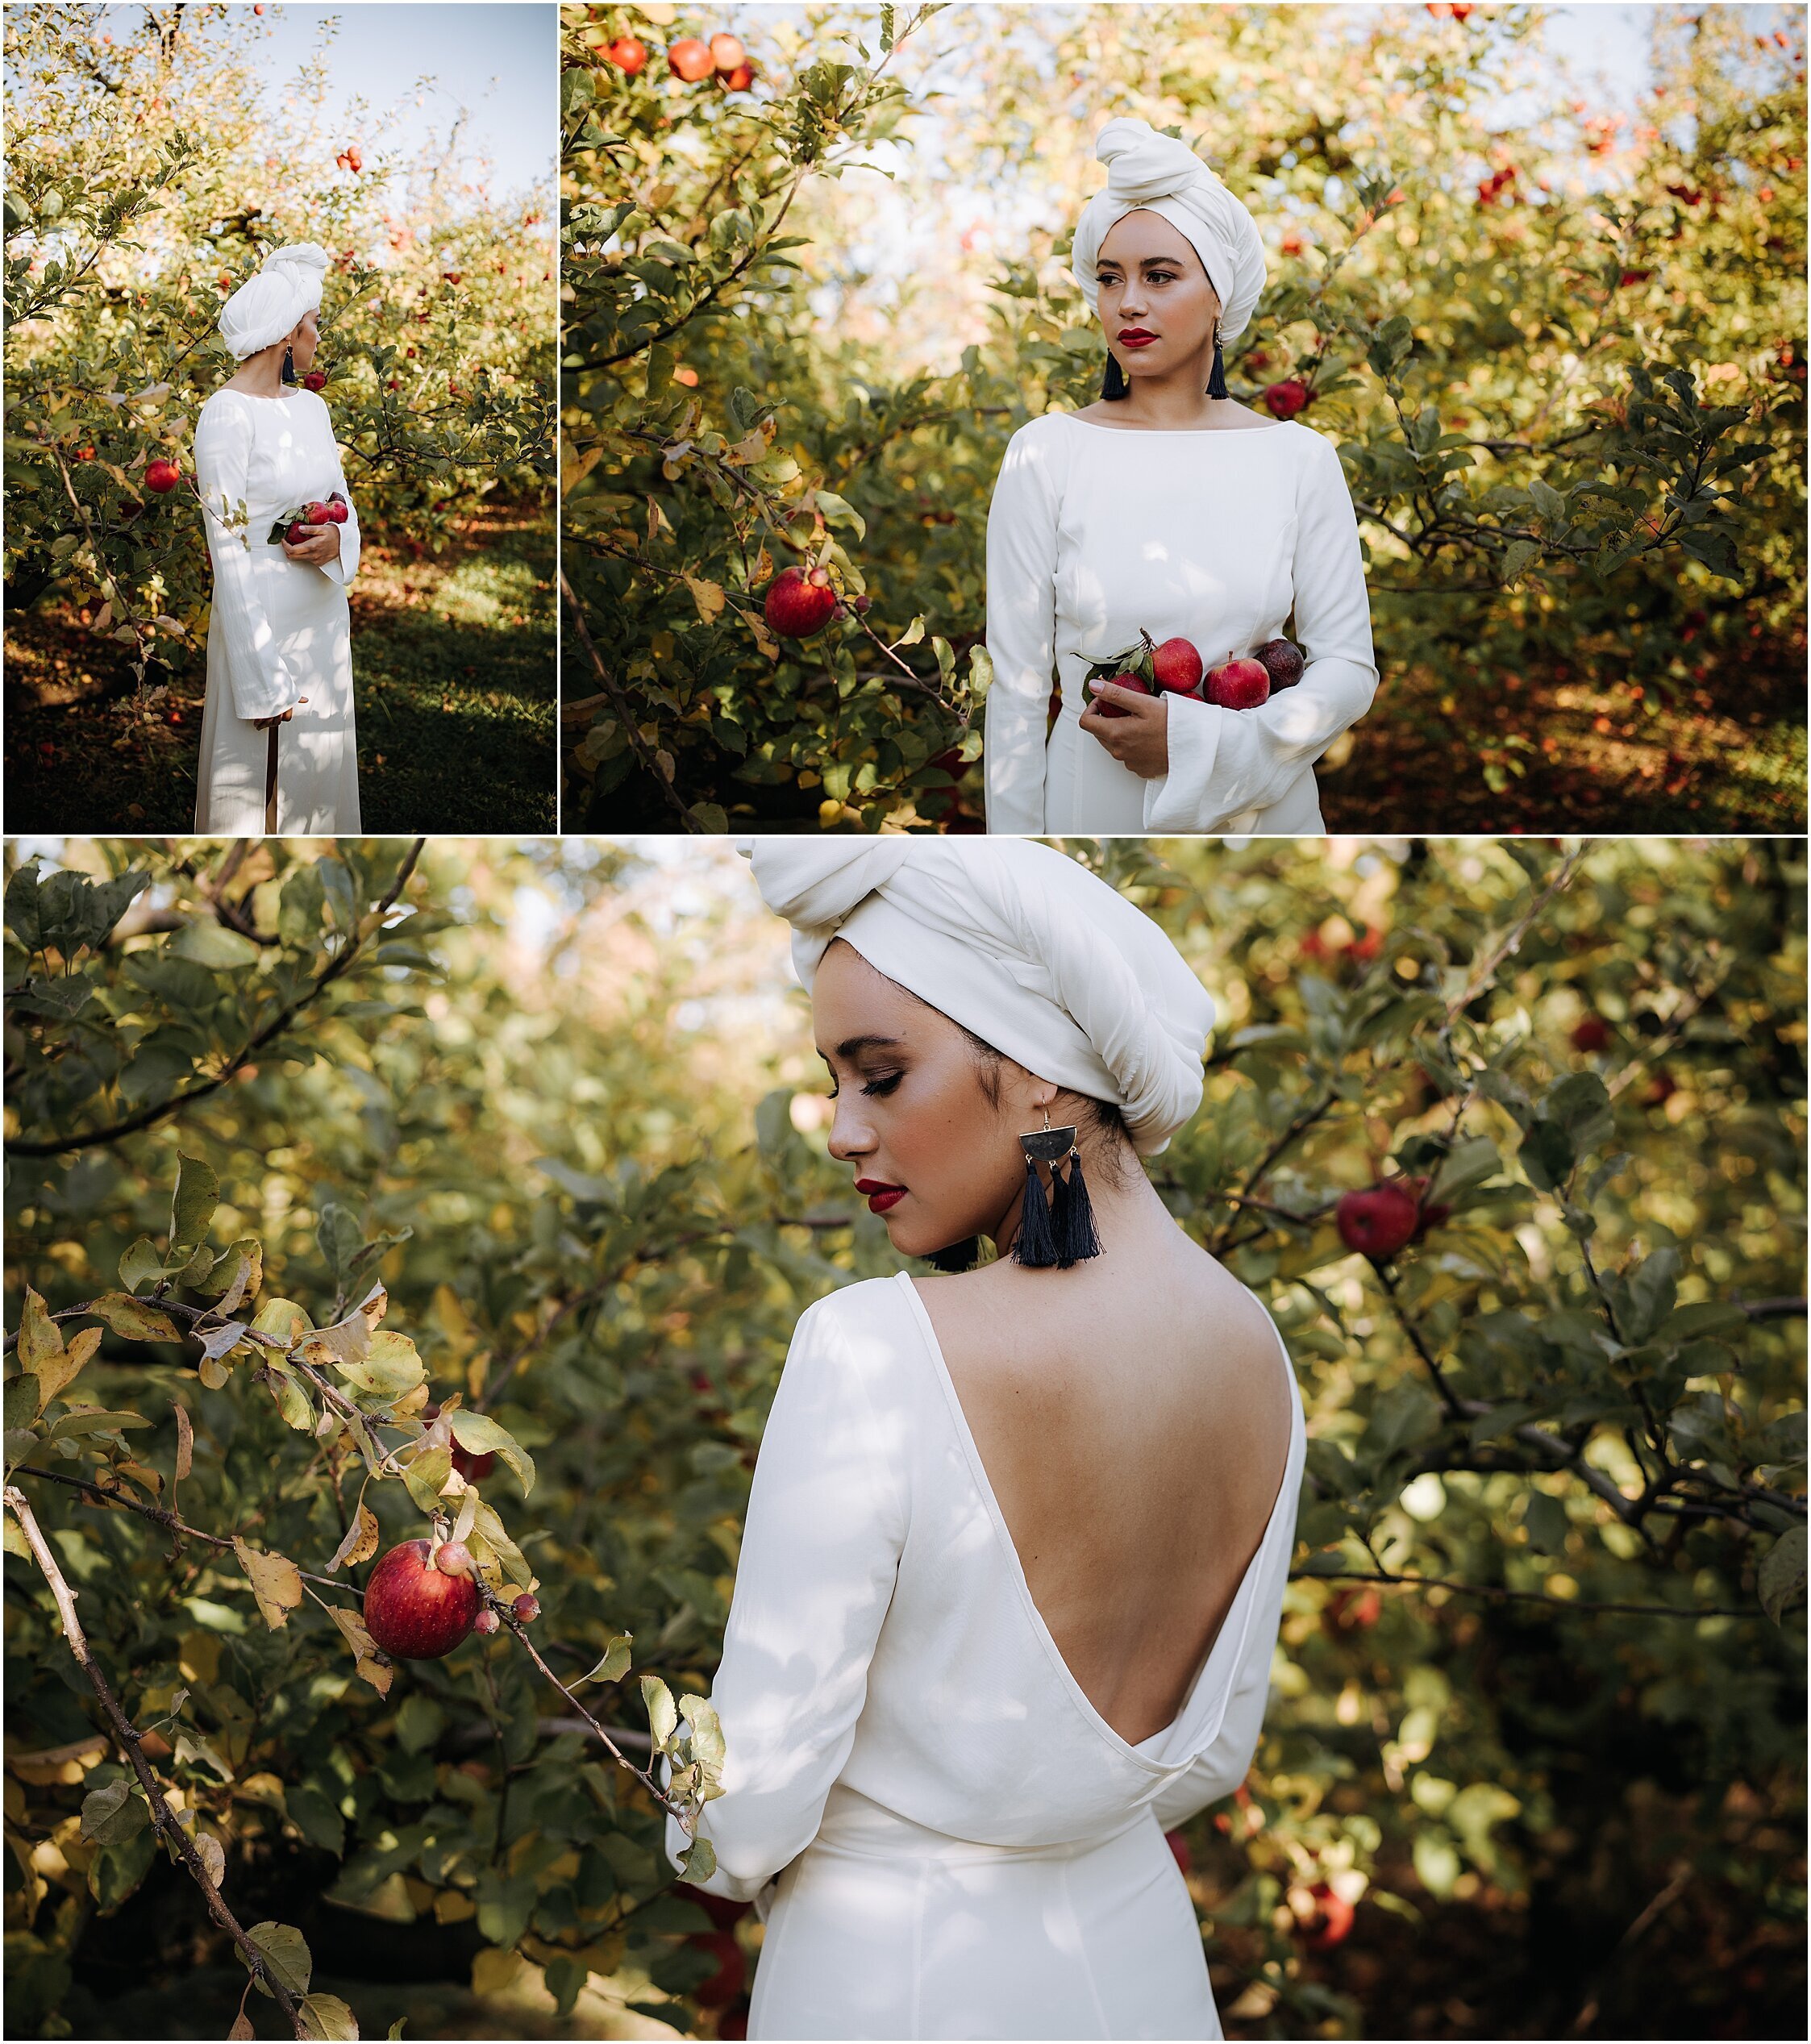 Zanda+Auckland+wedding+photographer+unique+portrait+photoshoot+ideas+autumn+winter+Windmill+apple+orchard+Coatesville+New+Zealand_7.jpeg